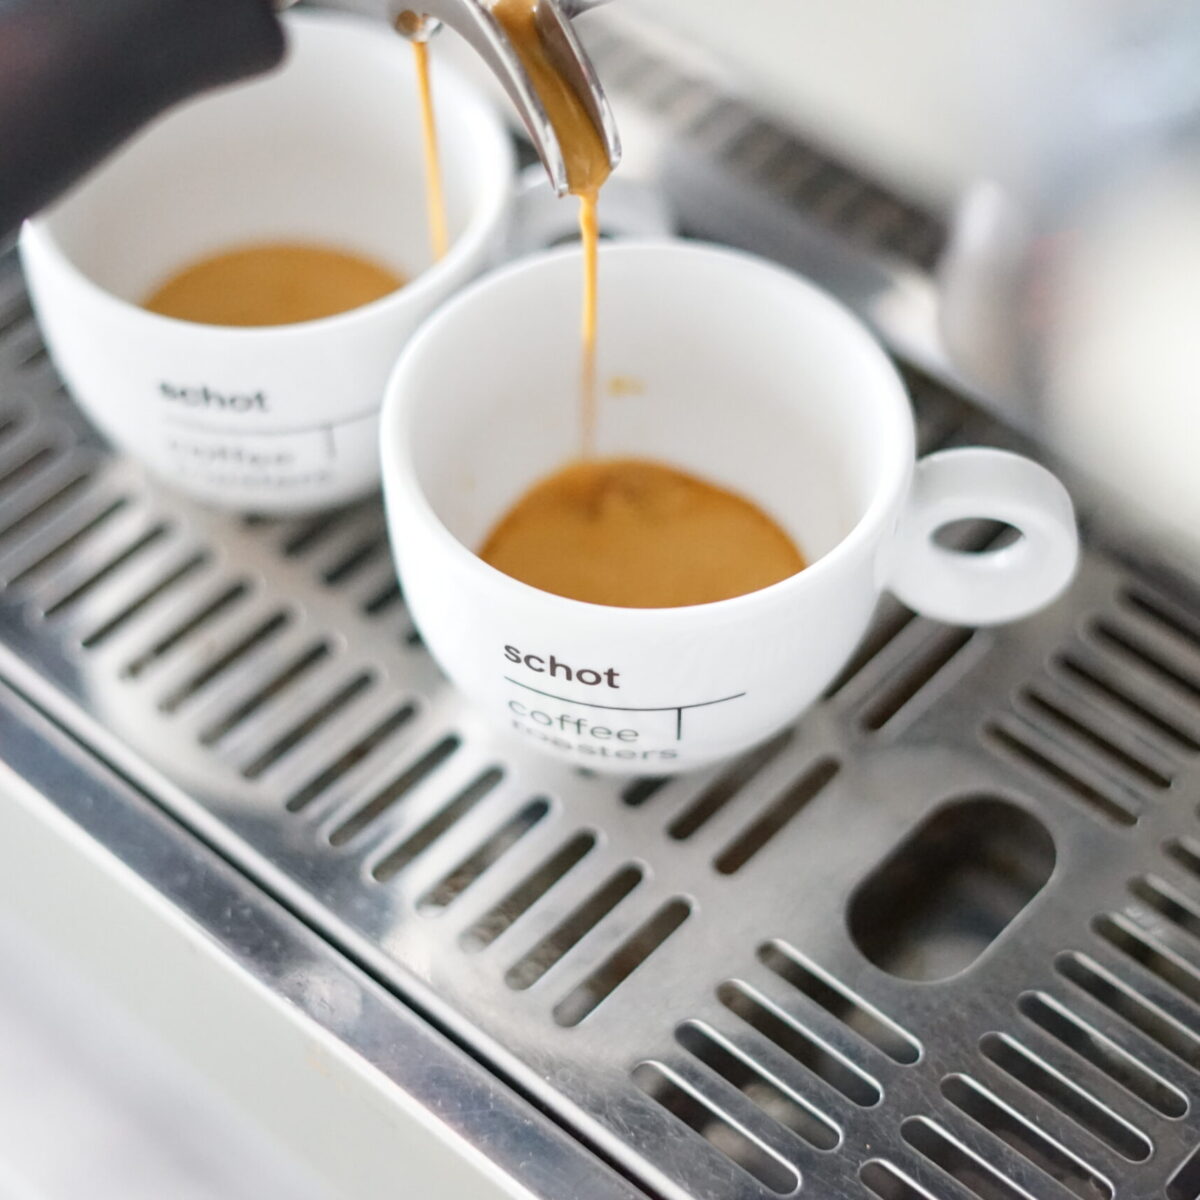 Schot koffiekopjes onder een espressomachine